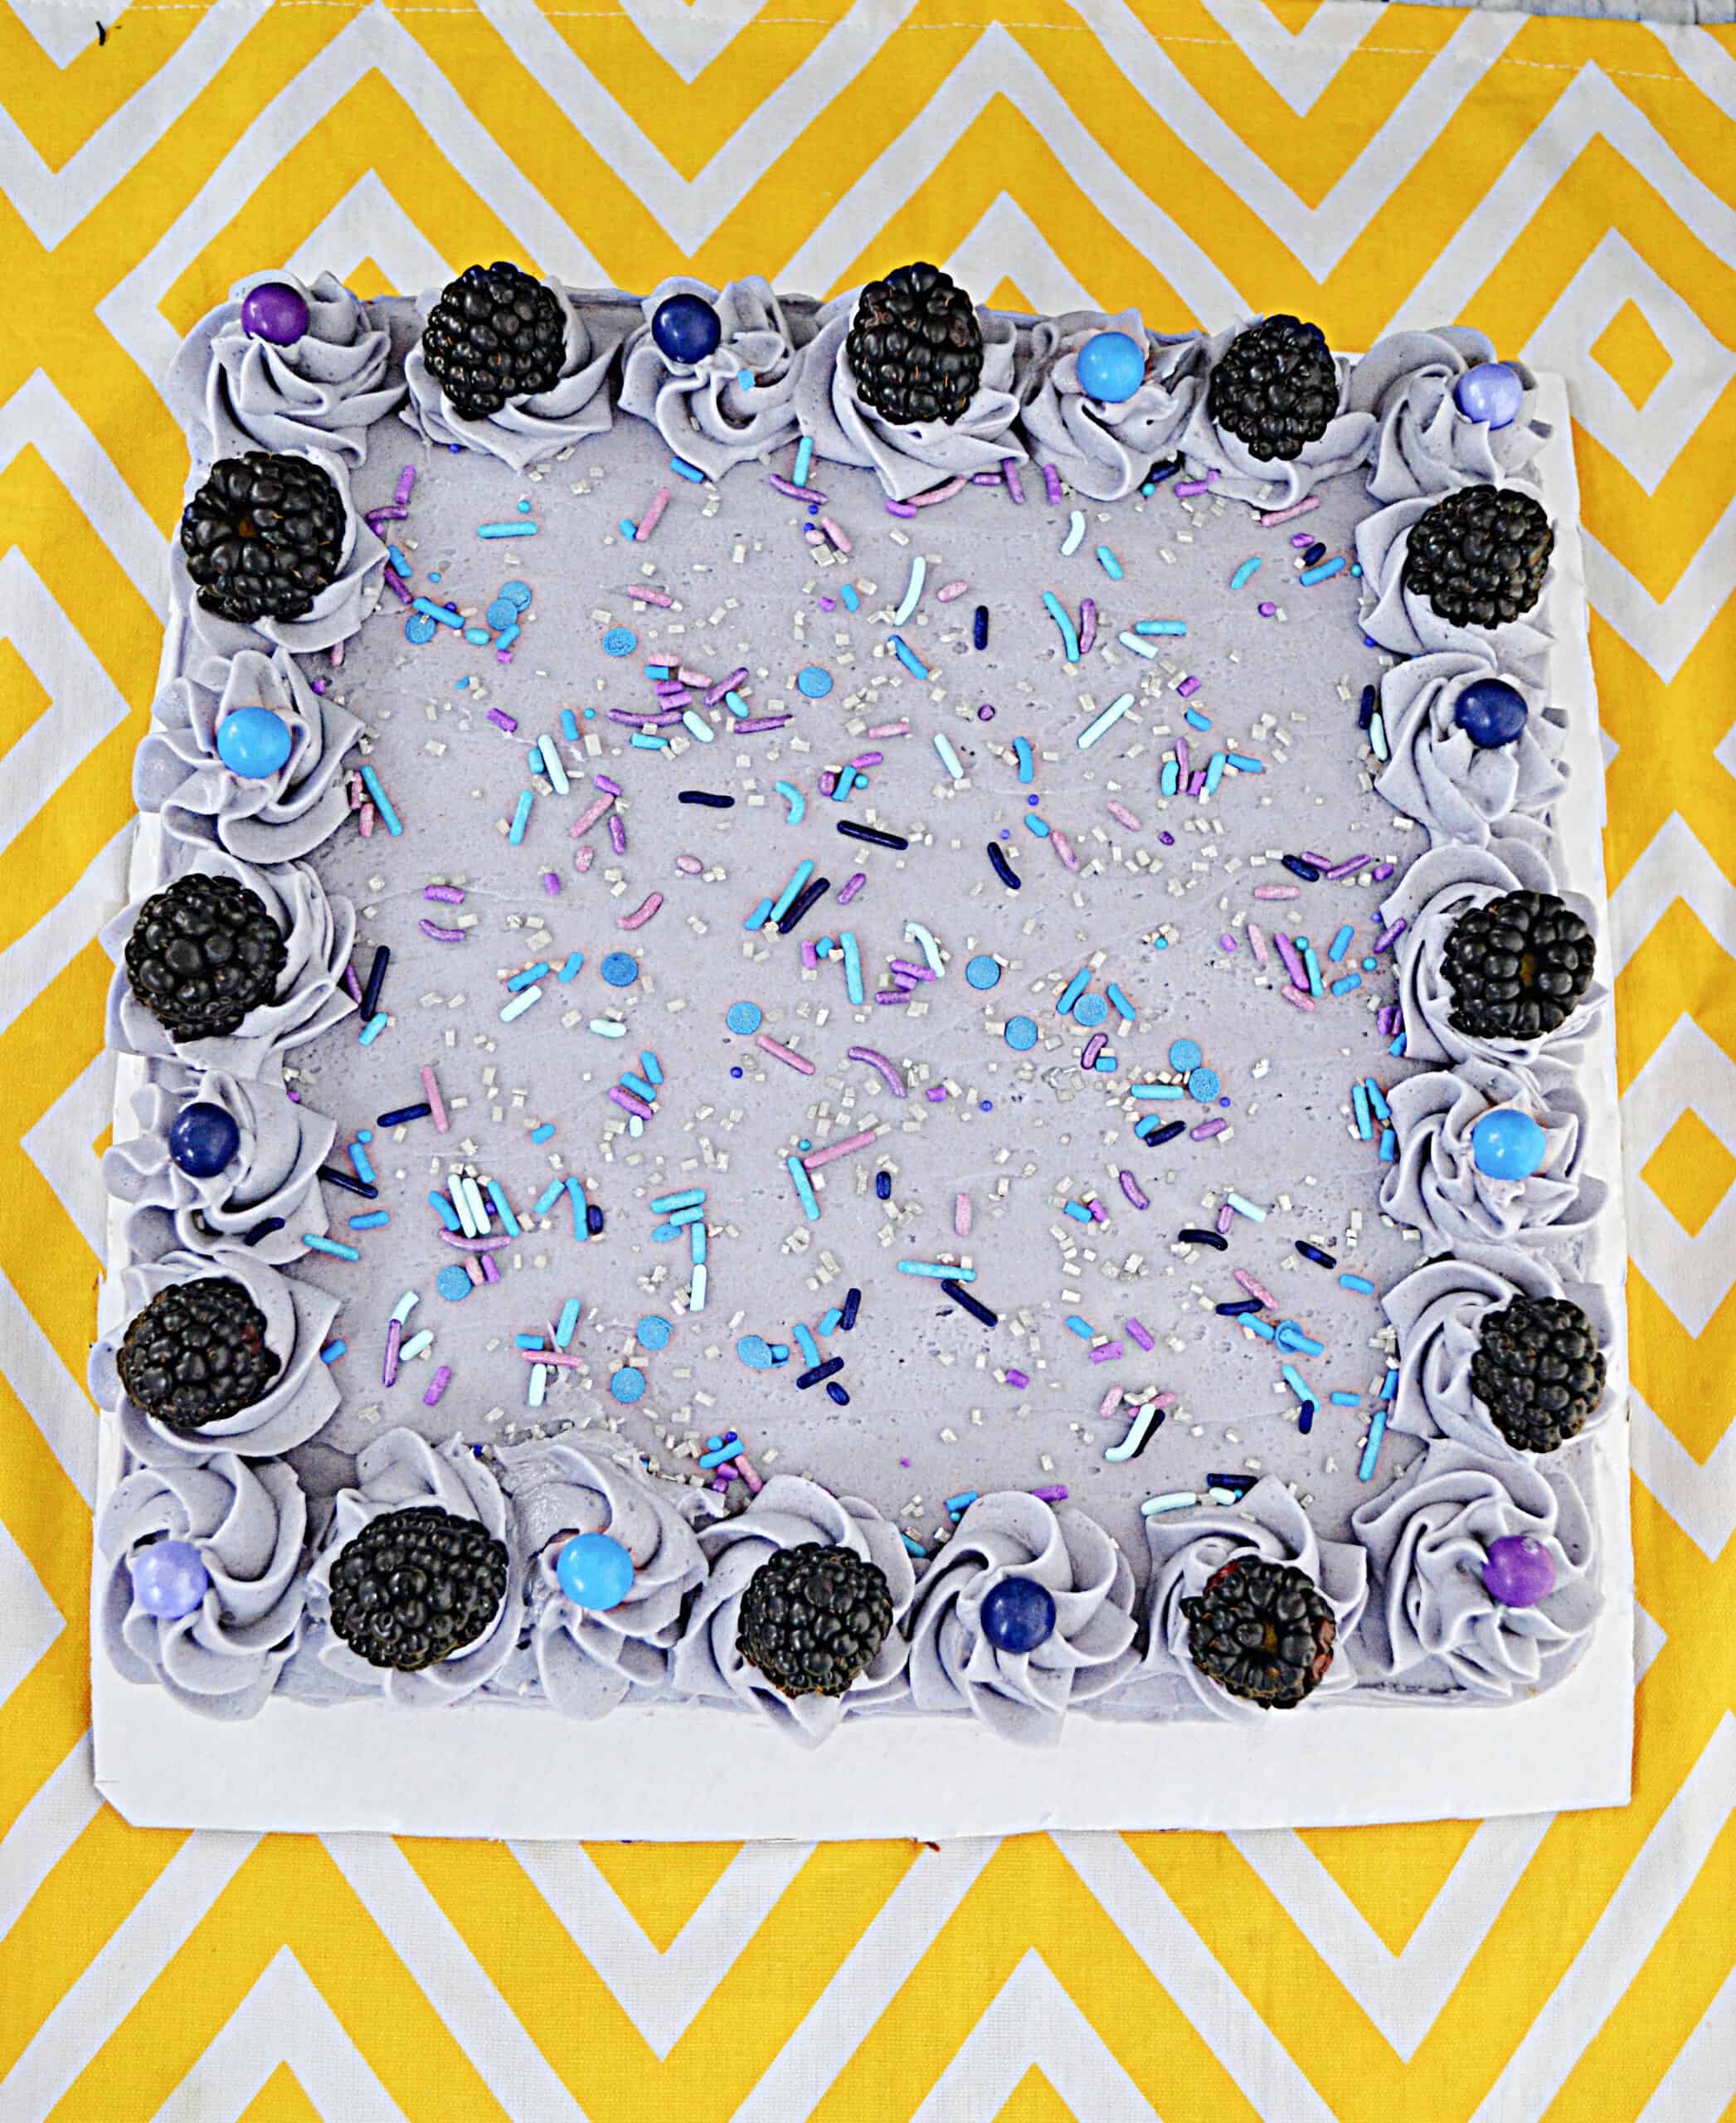 Blackberry Lavender Cake